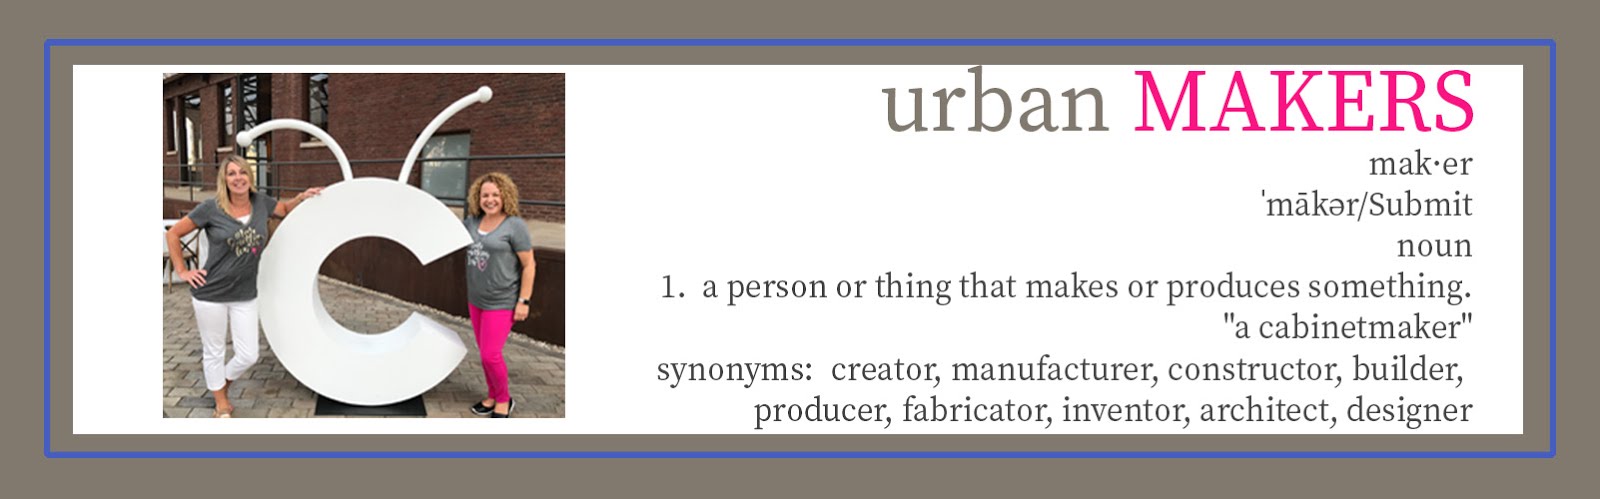 Urban Makers 